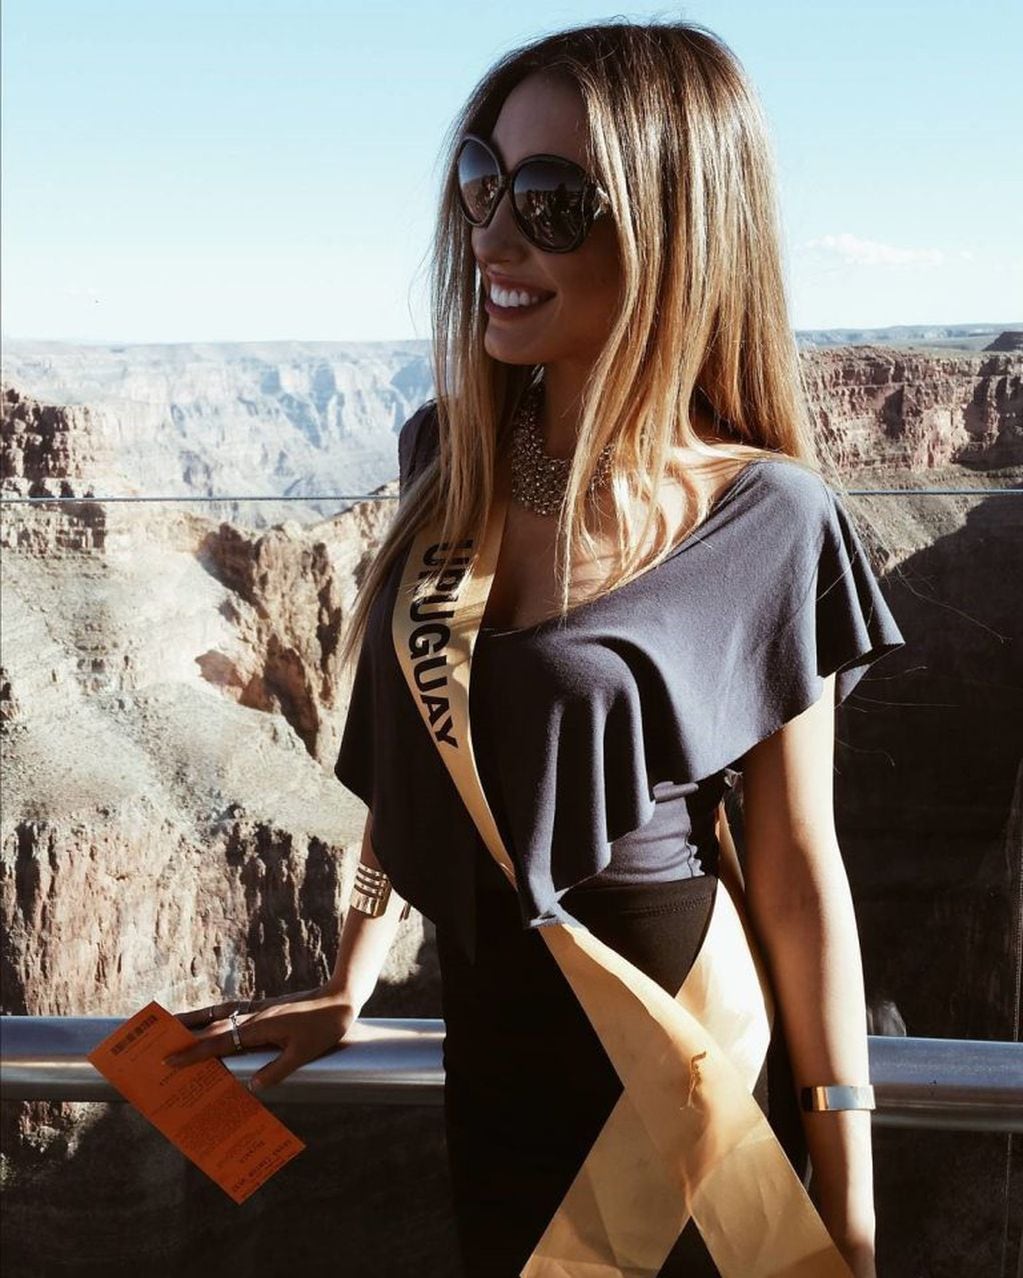 Además de triunfar como modelo y conductora, Melina Carballo cuenta con más de 38 mil seguidores en Instagram y es elegida por diversas marcas como influencer para promocionar sus productos  (Foto: Instagram/ @melcarballo_)